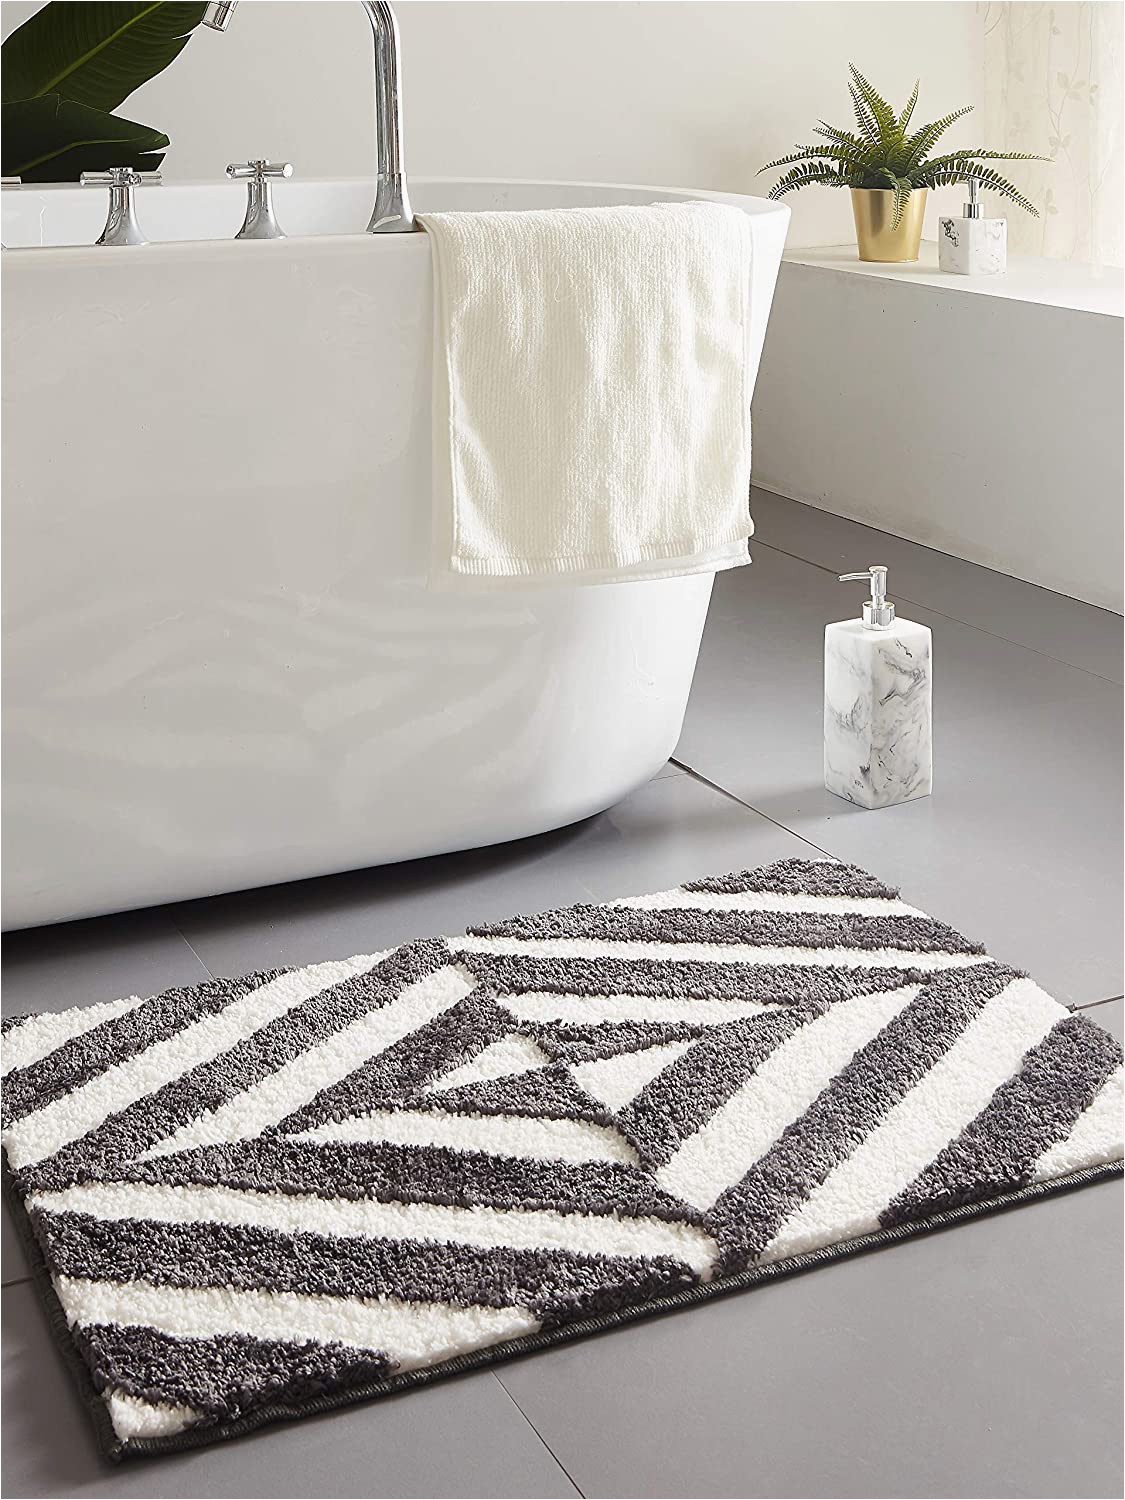 Heavy Duty Bathroom Rugs Amazon Desiderare Thick Fluffy Dark Grey Bath Mat 31